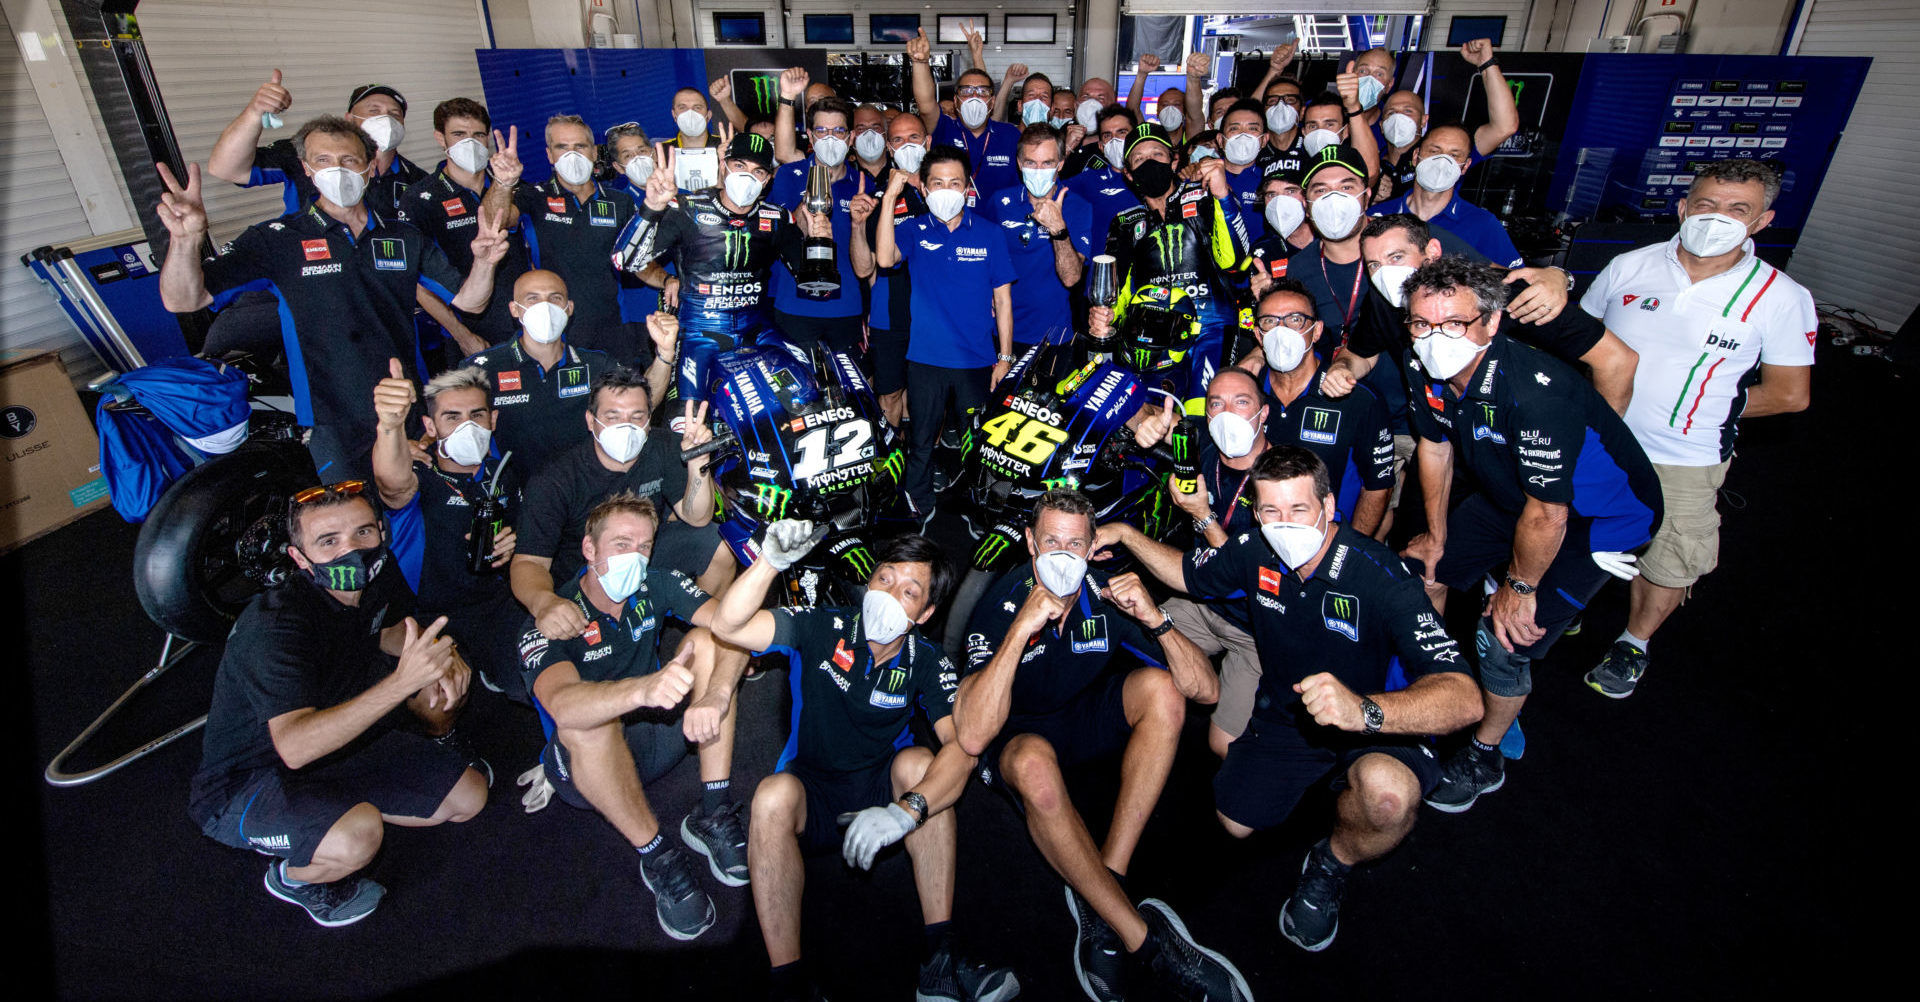 The Monster Energy Yamaha MotoGP team at Jerez. Photo courtesy of Monster Energy Yamaha.